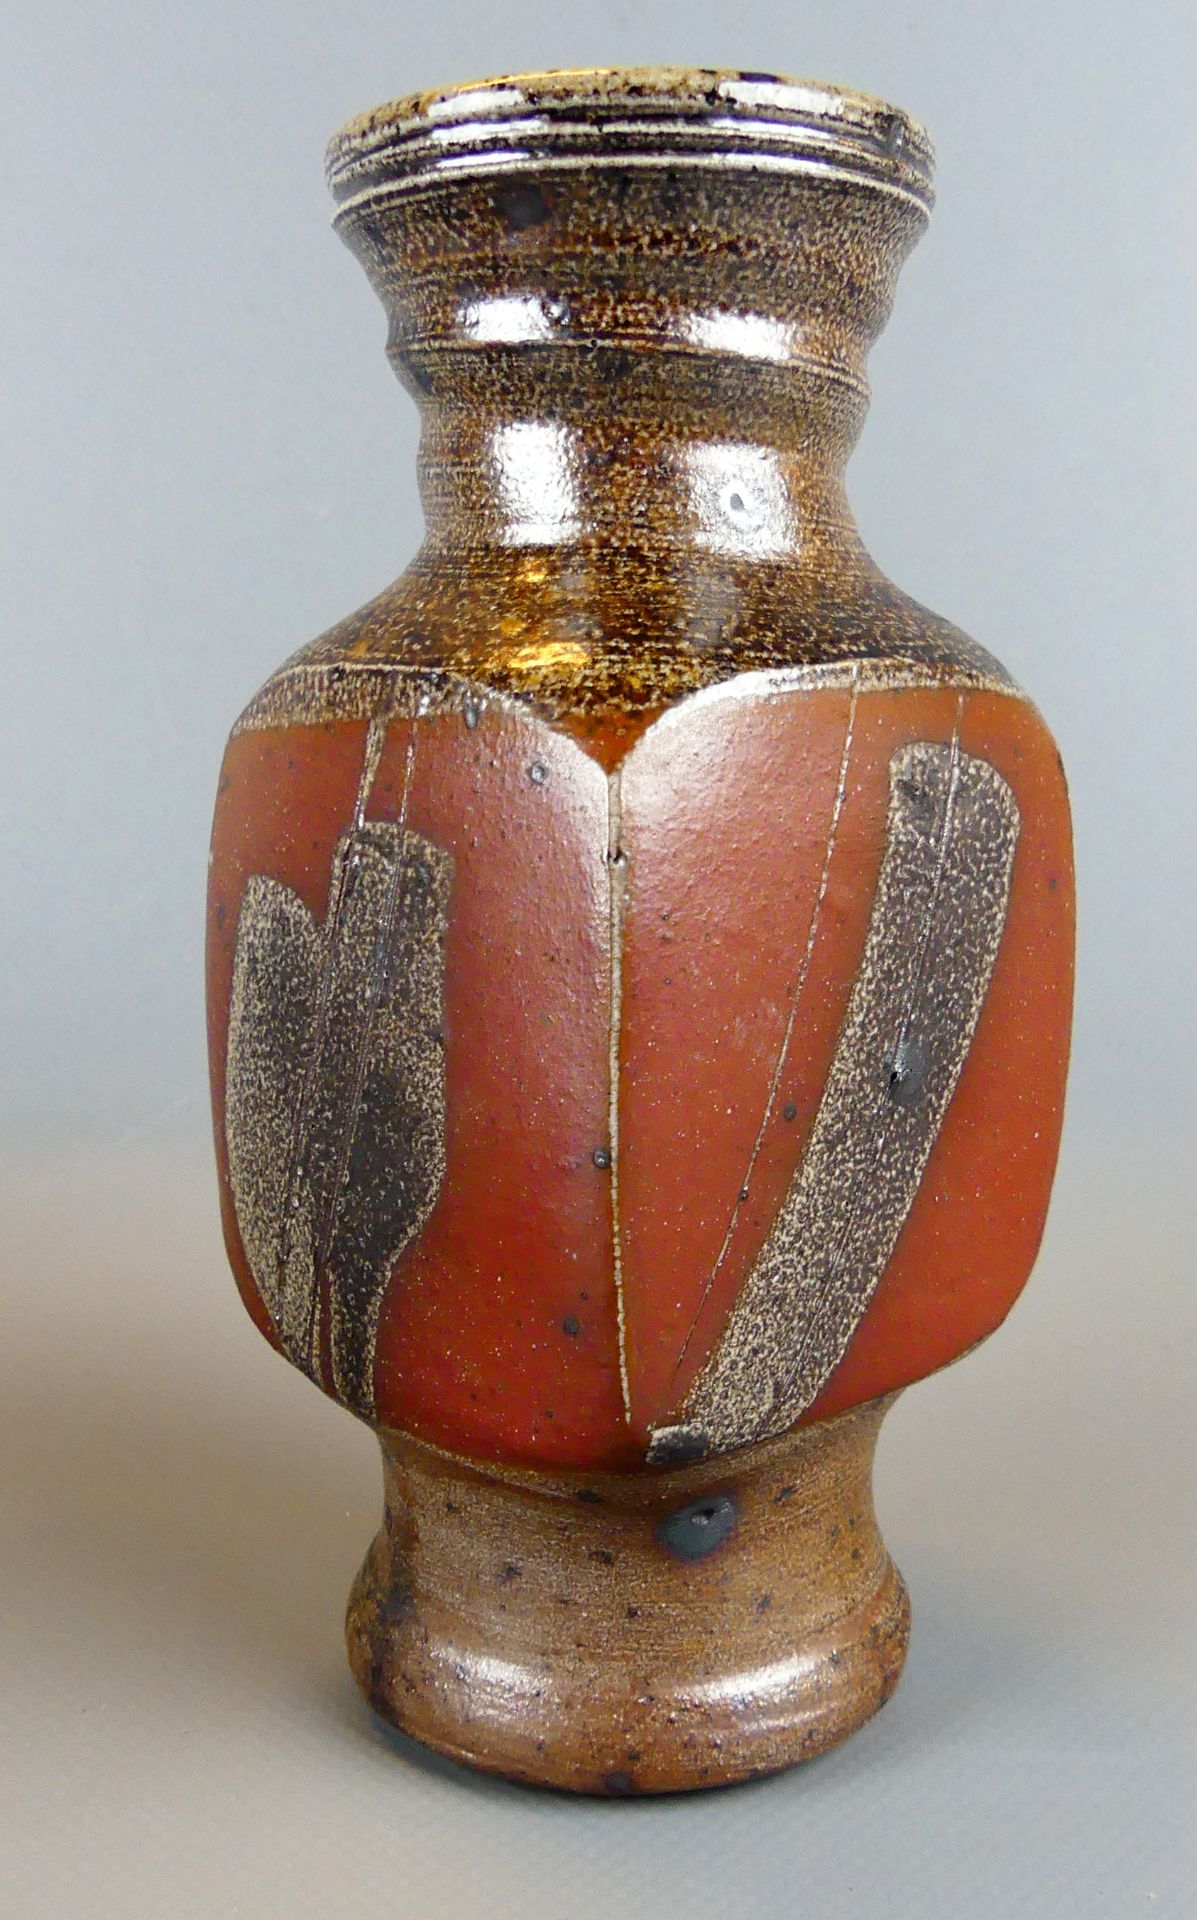 Vase, Keramik, eckige Bauchung, runder Fuß, verschiedene Ornamente, - Bild 2 aus 2